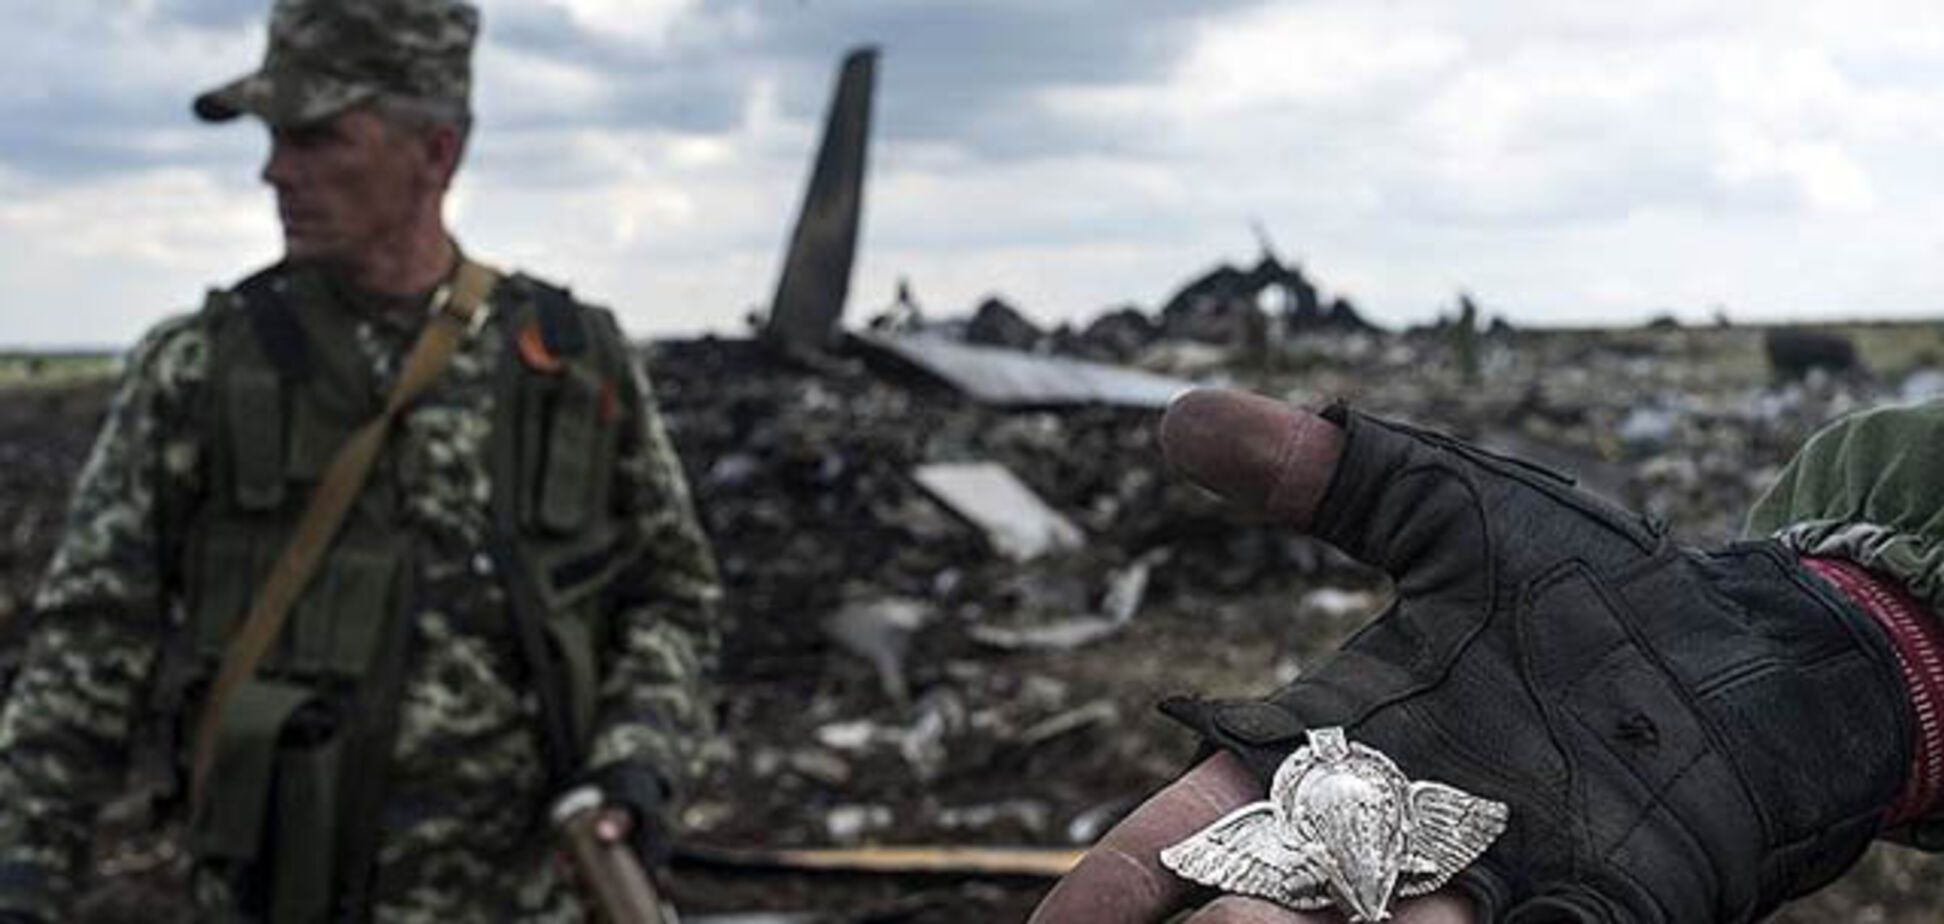 Річниця аварії літака ІЛ-76 під Луганськом. Всі факти про жахливу трагедію